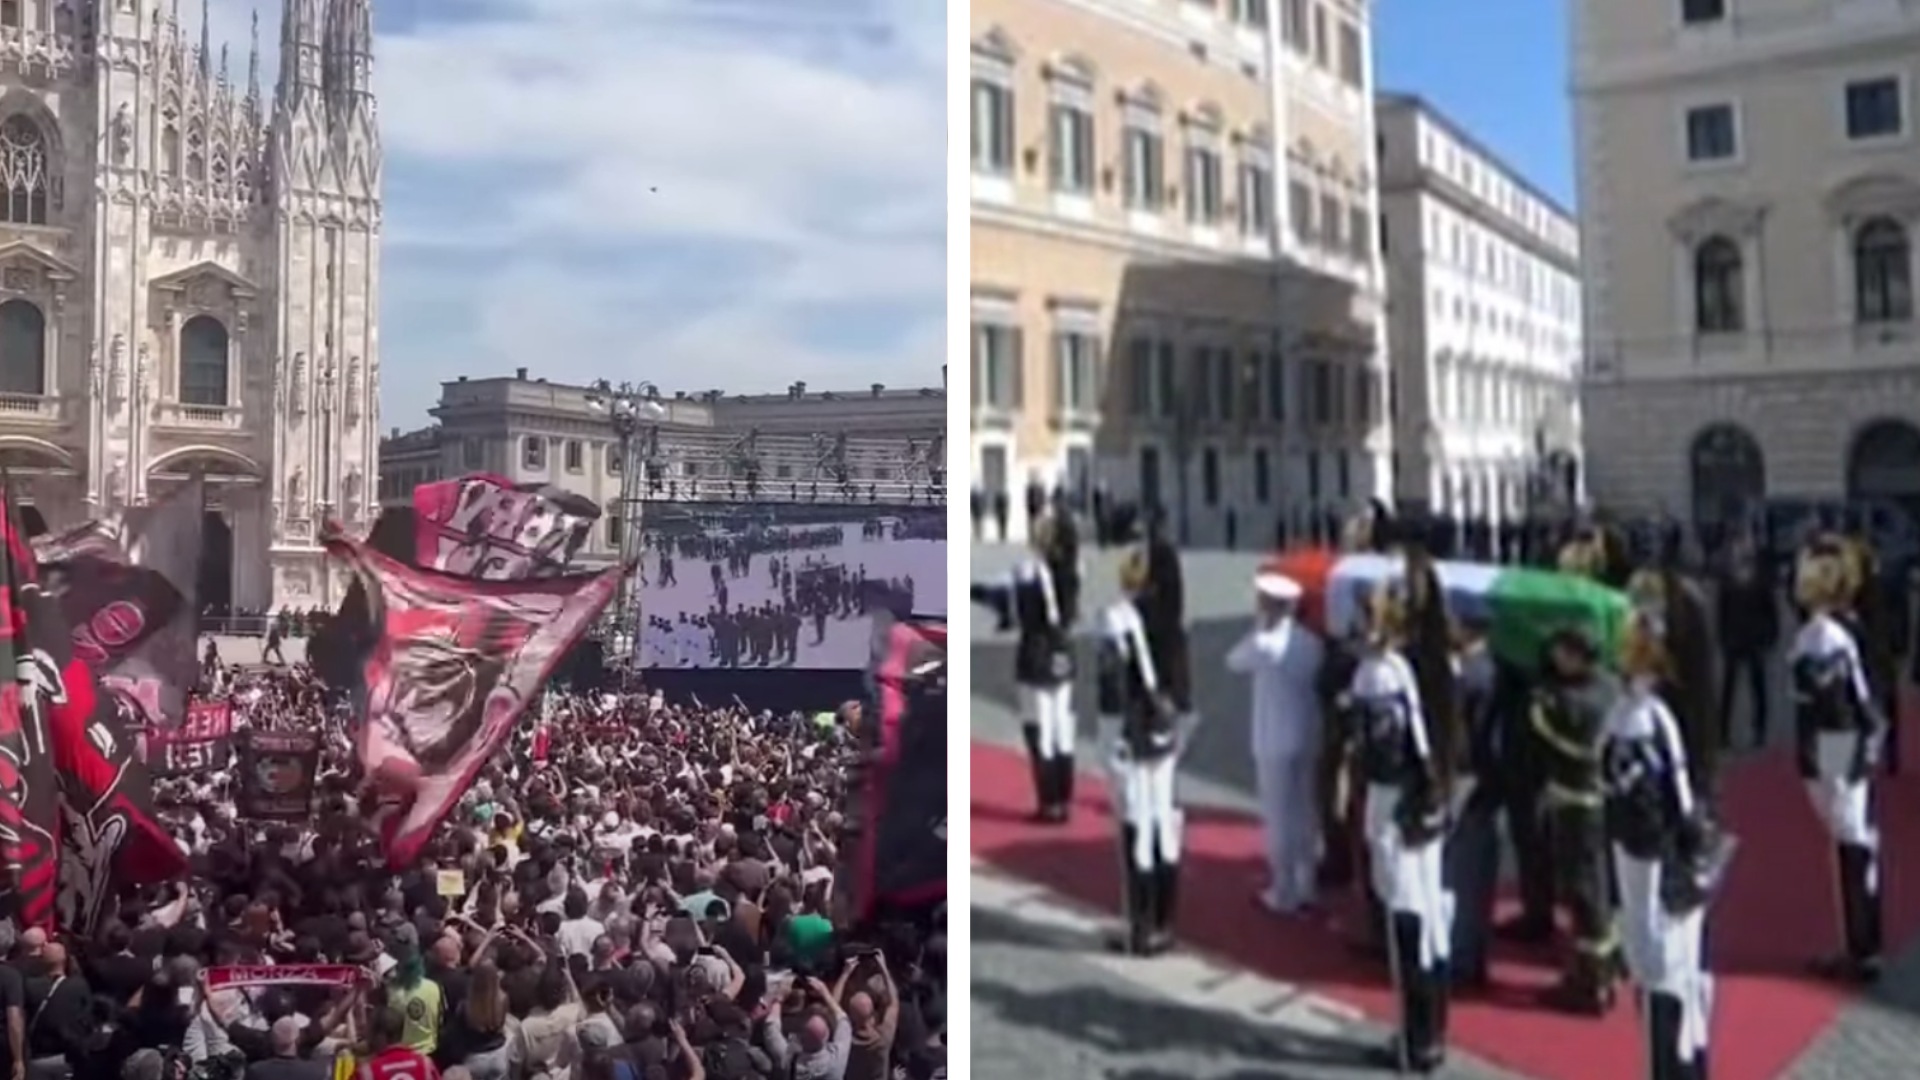 Berlusconi Napolitano, “migliaia” contro “decine”: tutta la differenza ai funerali